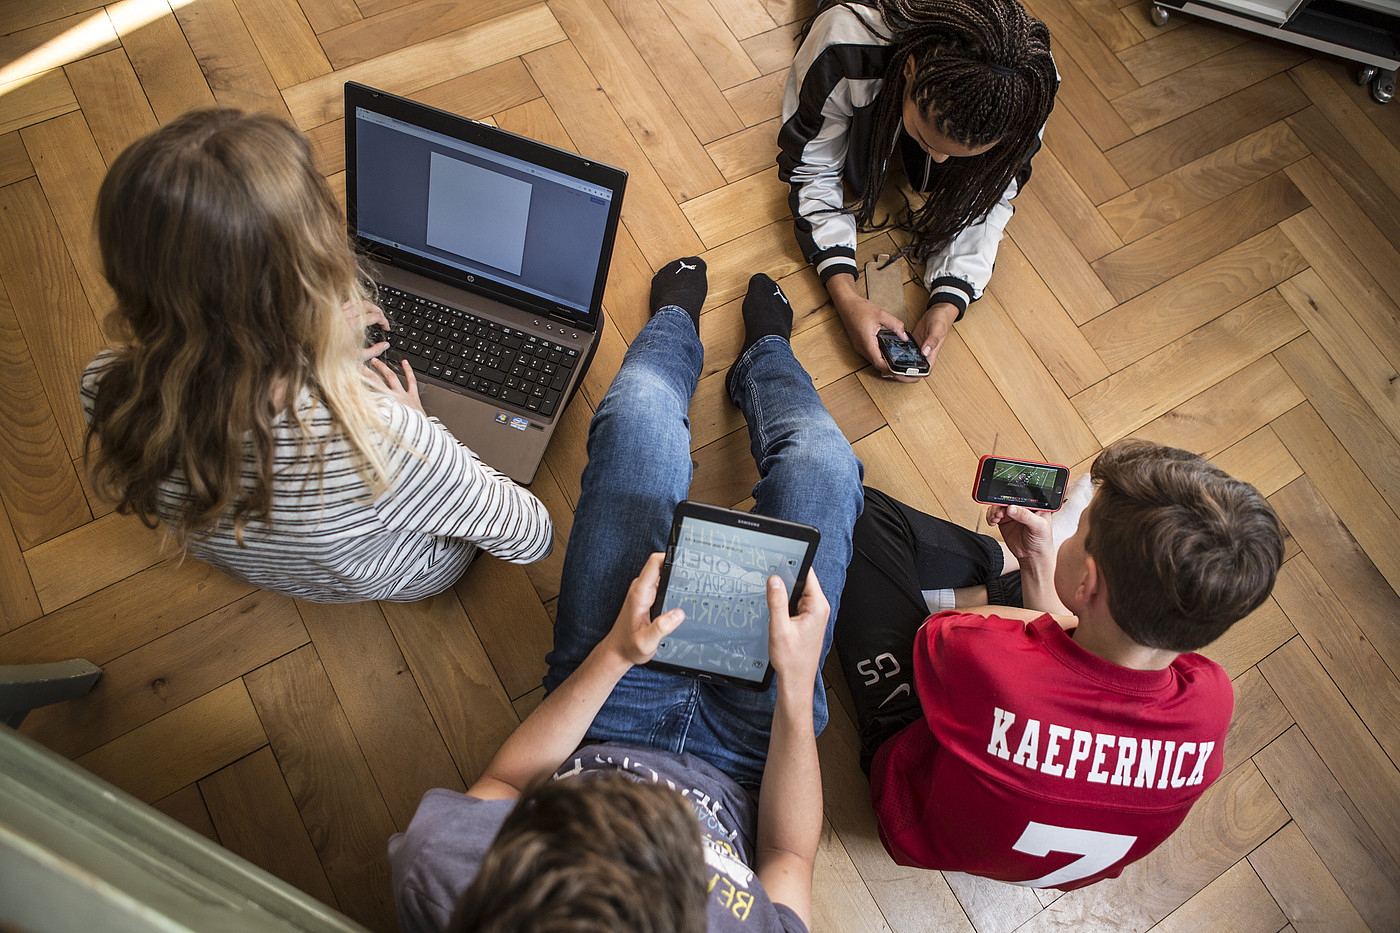 4 adolescenti seduti o sdraiati sul pavimento, tutti con un computer portatile, un tablet o uno smartphone.